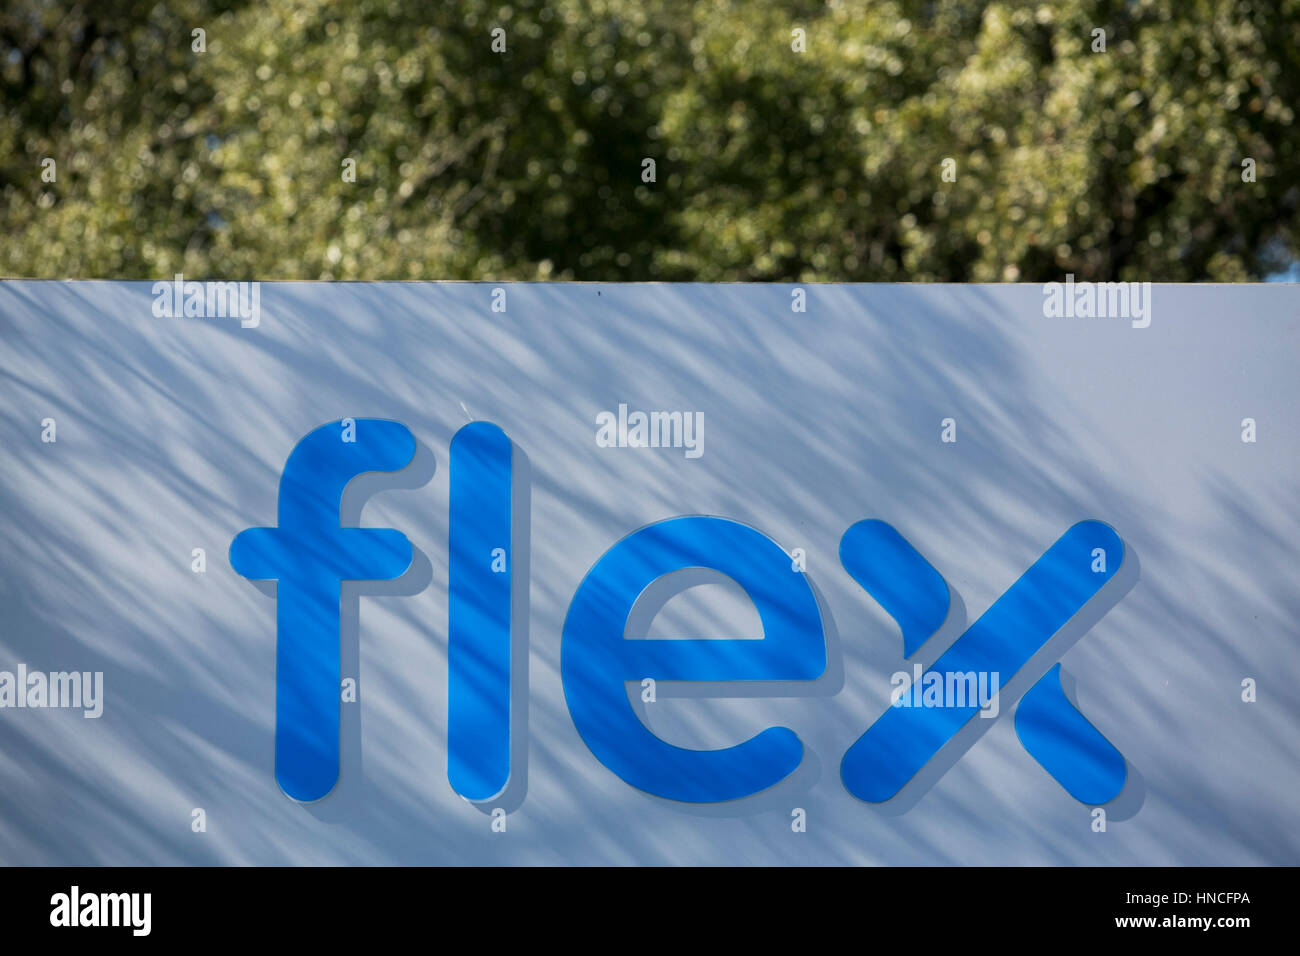 Un logotipo cartel fuera de una instalación ocupada por Flex Ltd., en Austin, Texas, el 28 de enero de 2017. Foto de stock